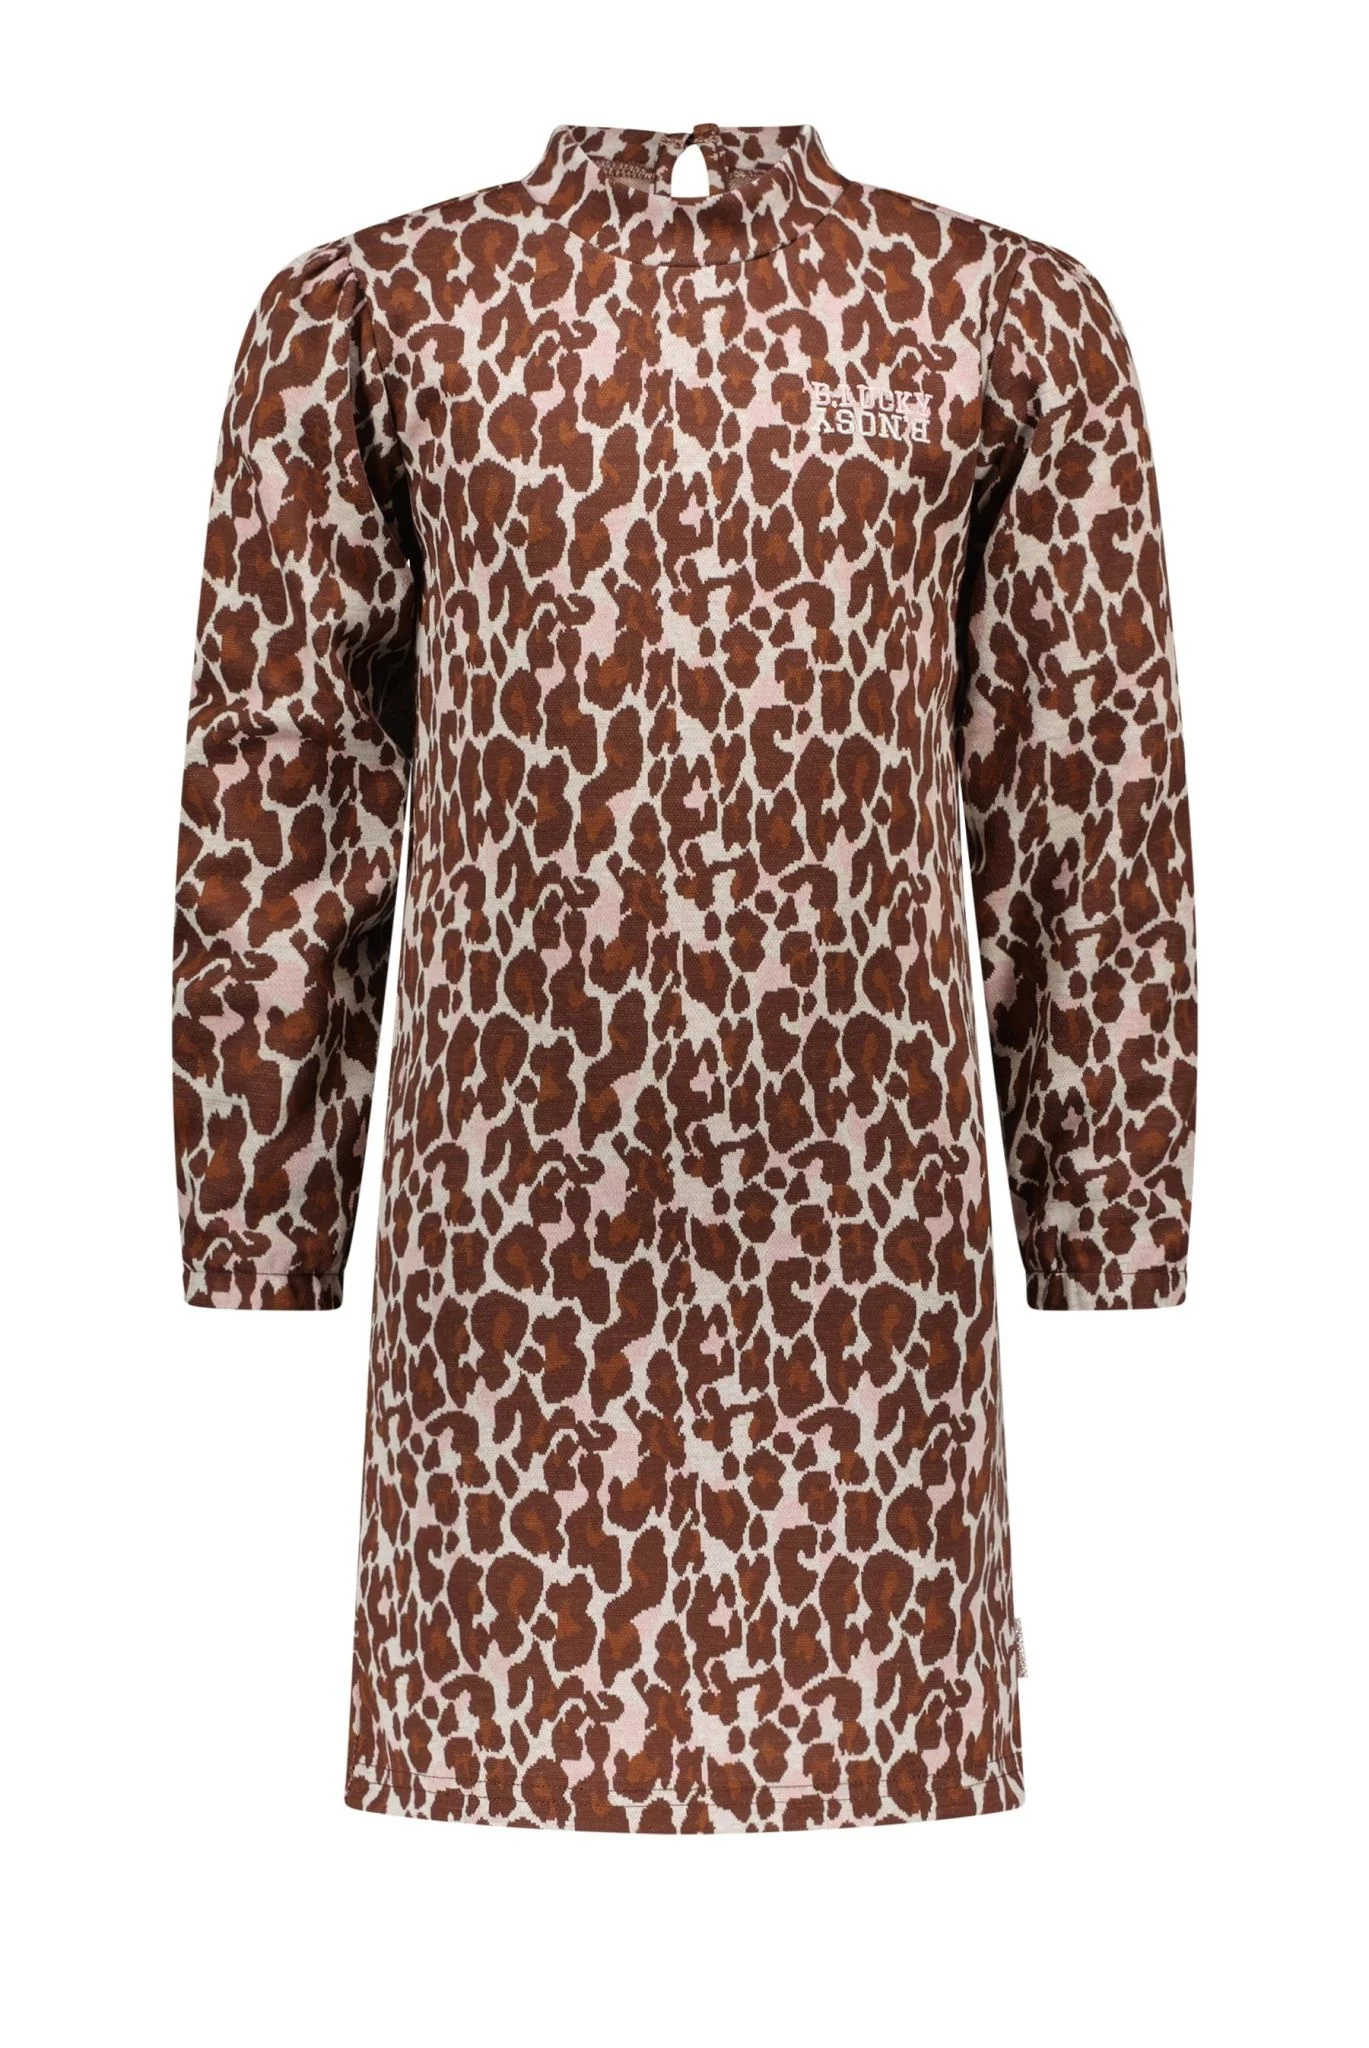 Afbeelding van B.Nosy Meisjes jurk met puffy schouders jacquard lucky leopard